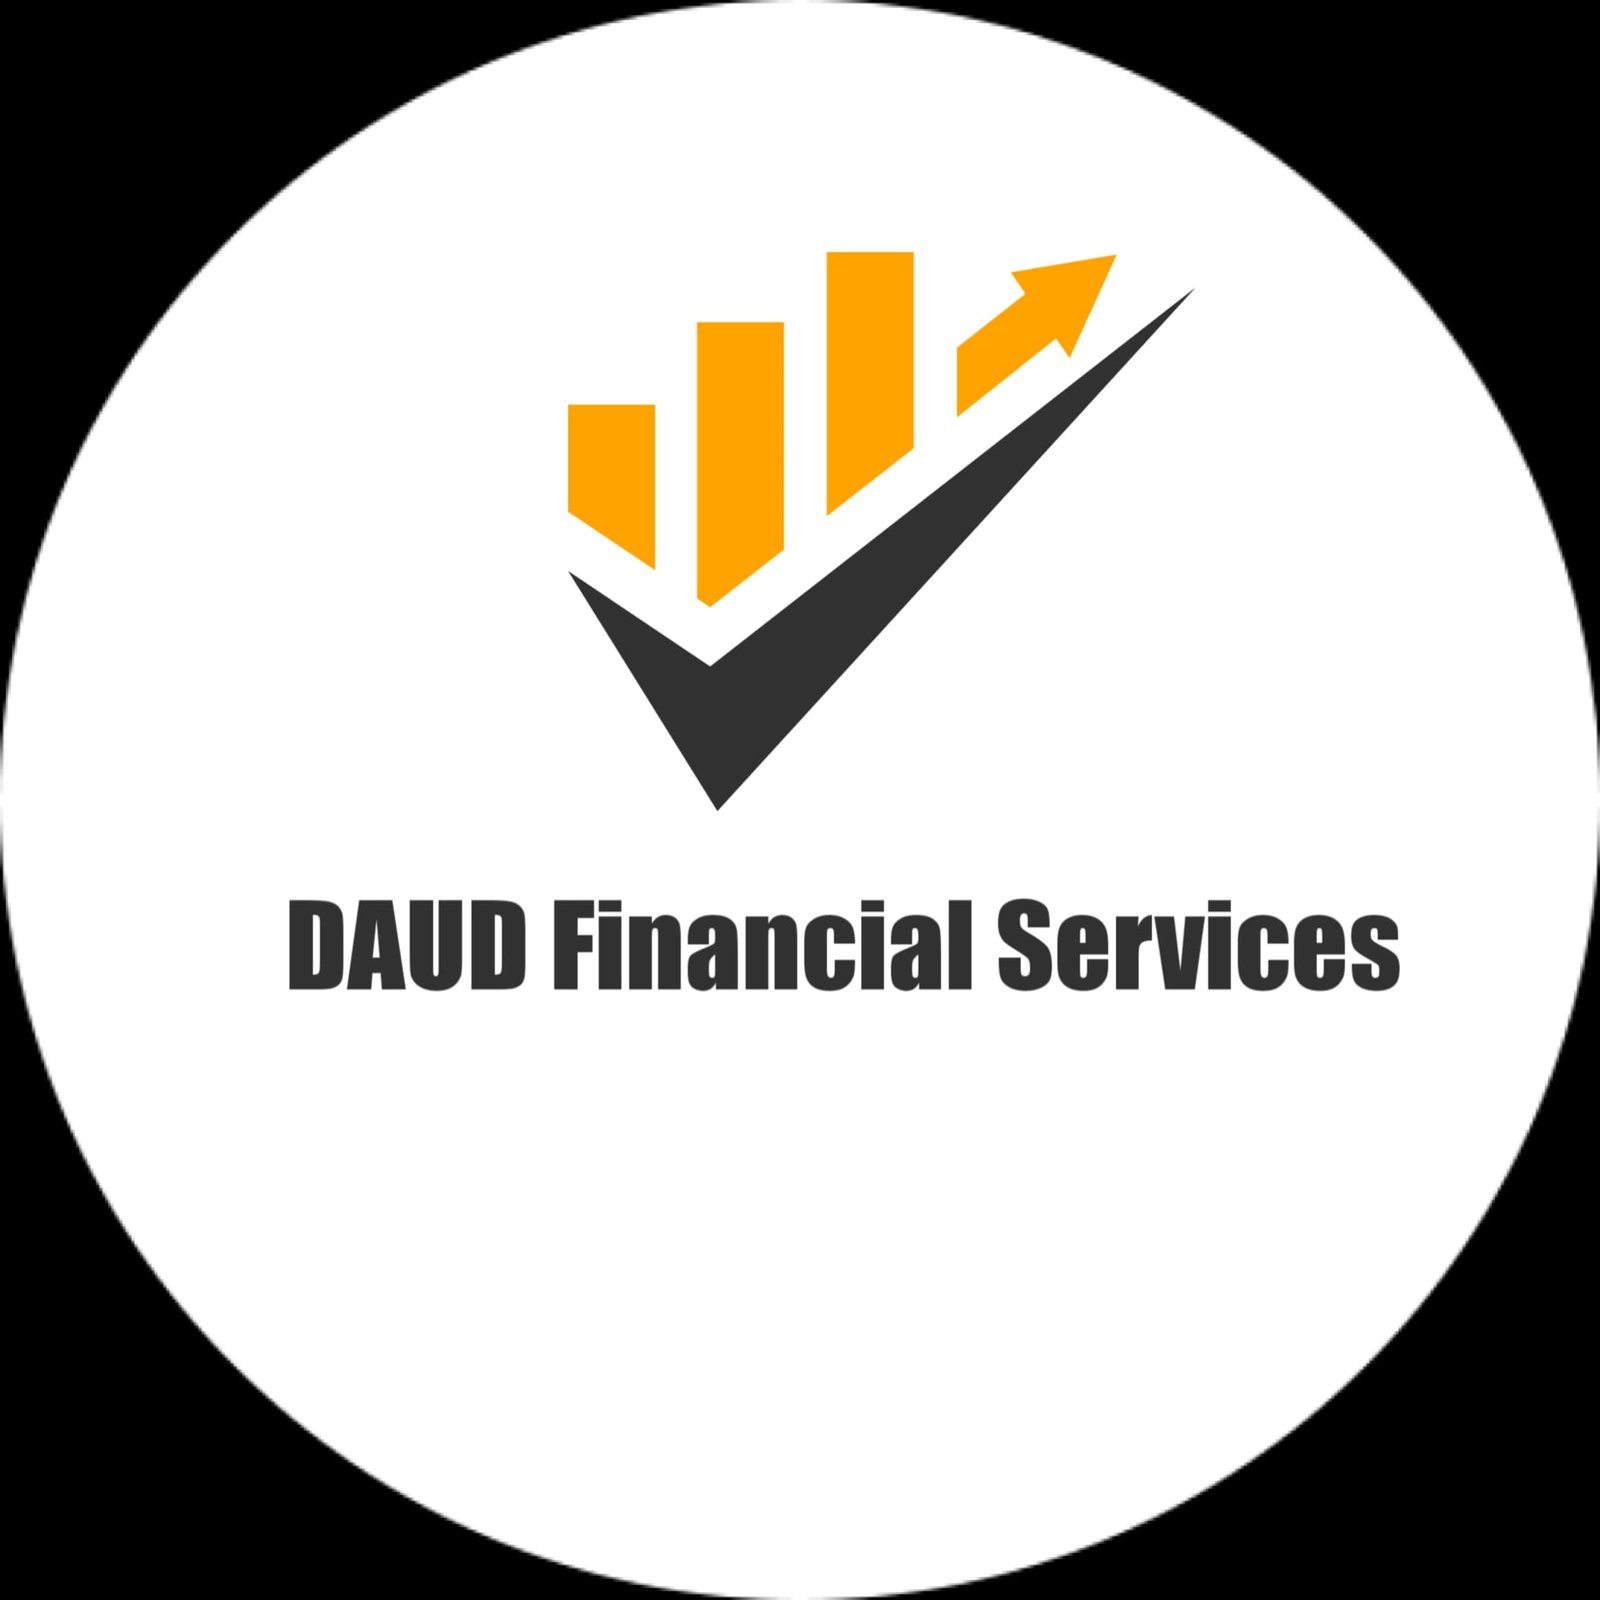 Daud Financial Services